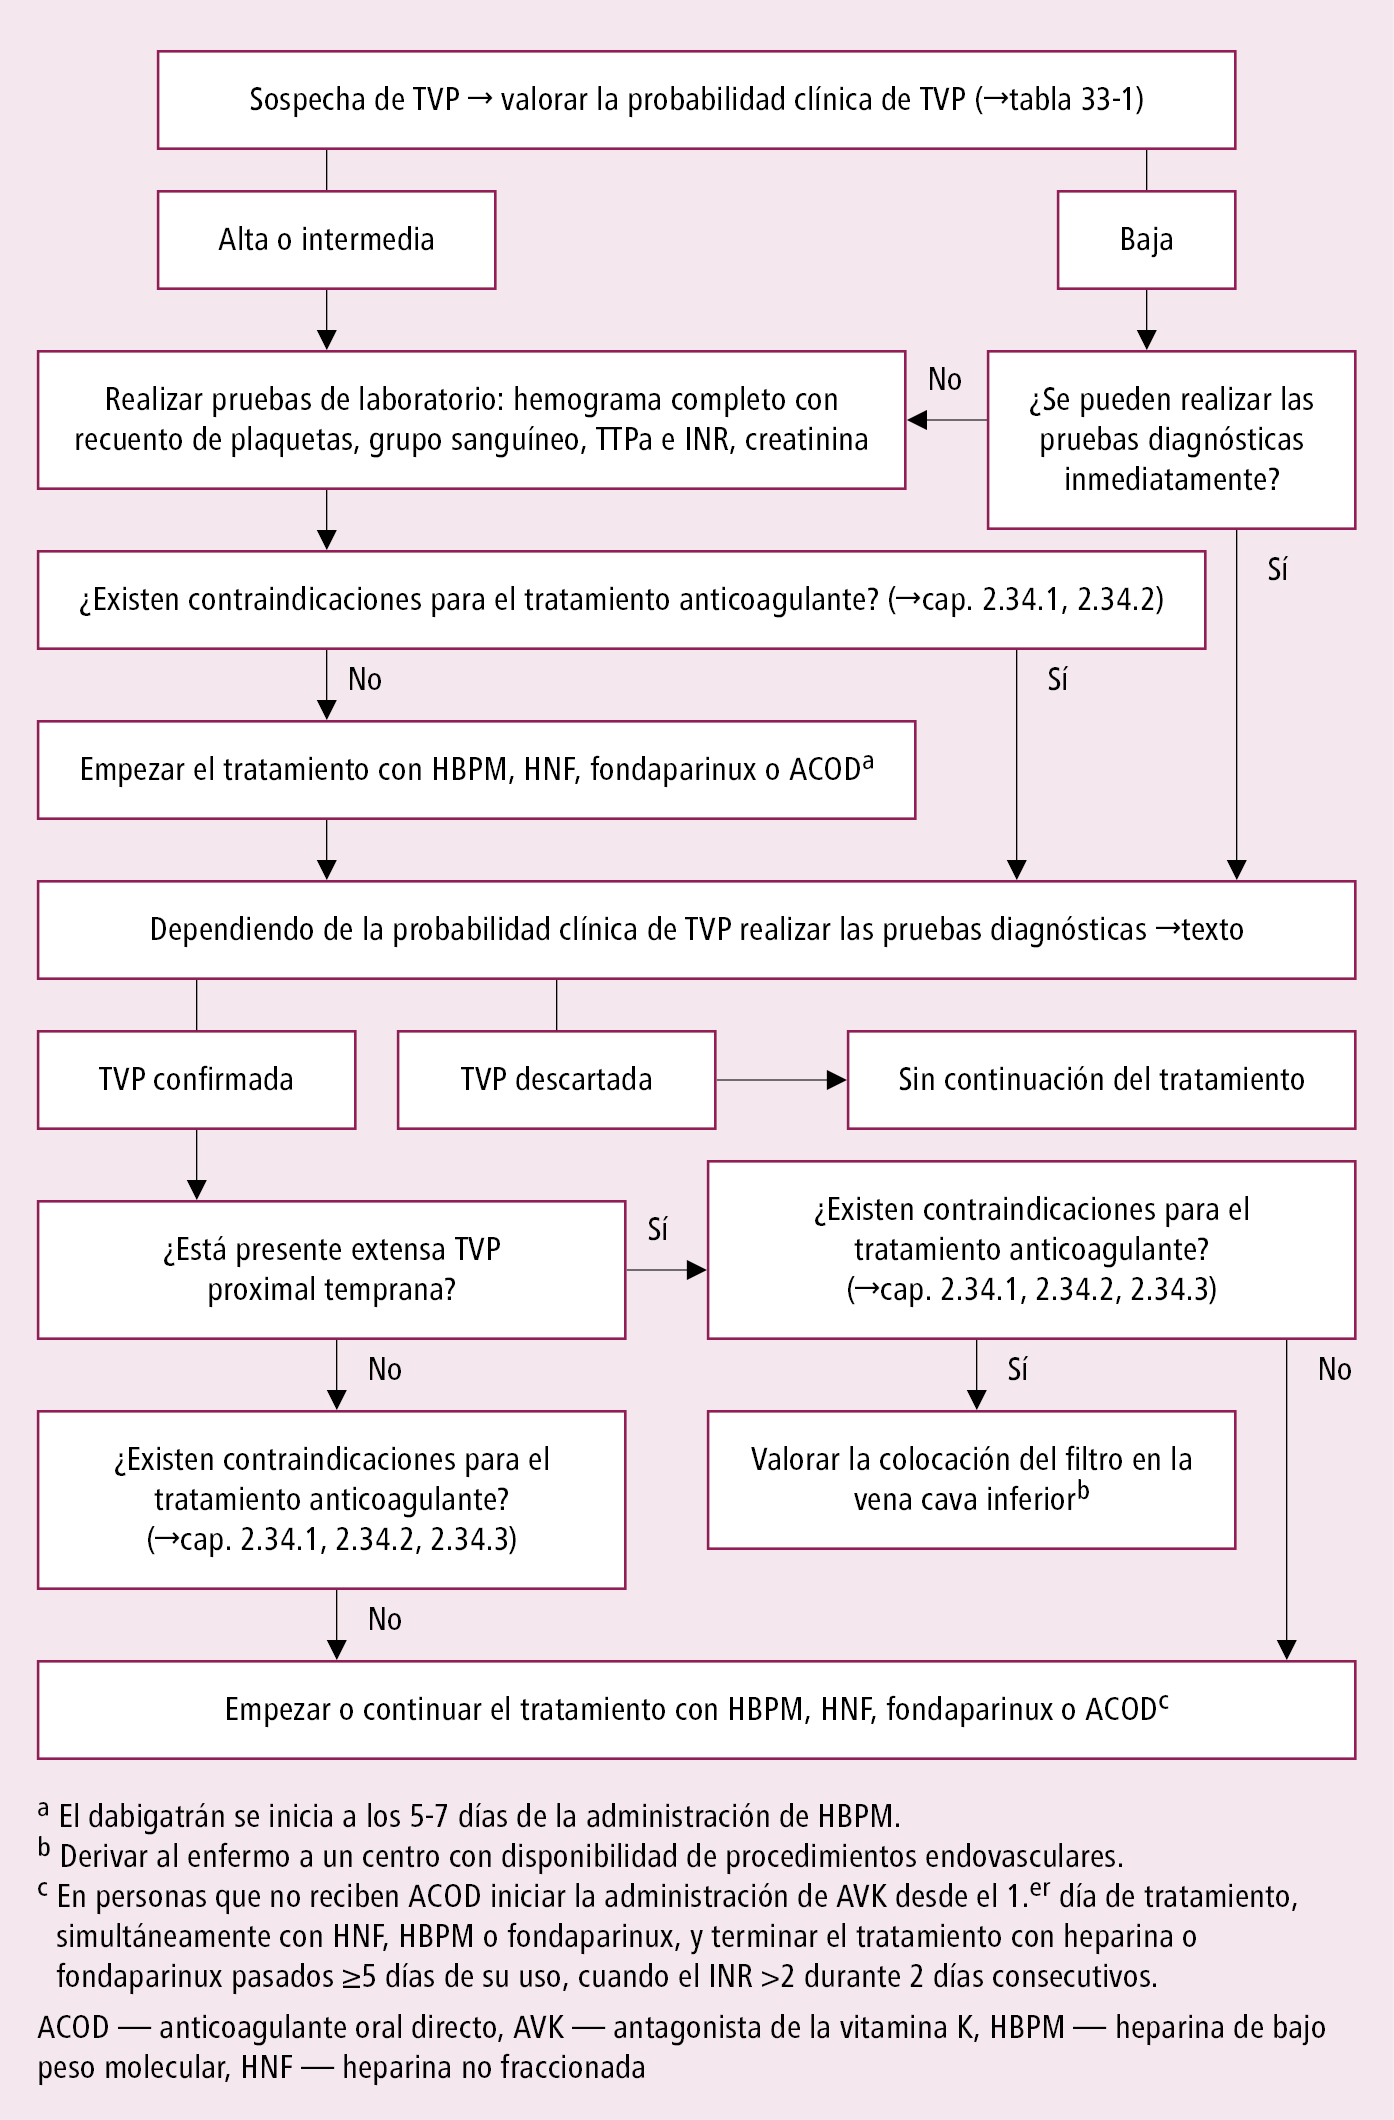    Fig. 2.33-1.  Algoritmo del tratamiento de la trombosis venosa profunda (TVP) de las extremidades inferiores  